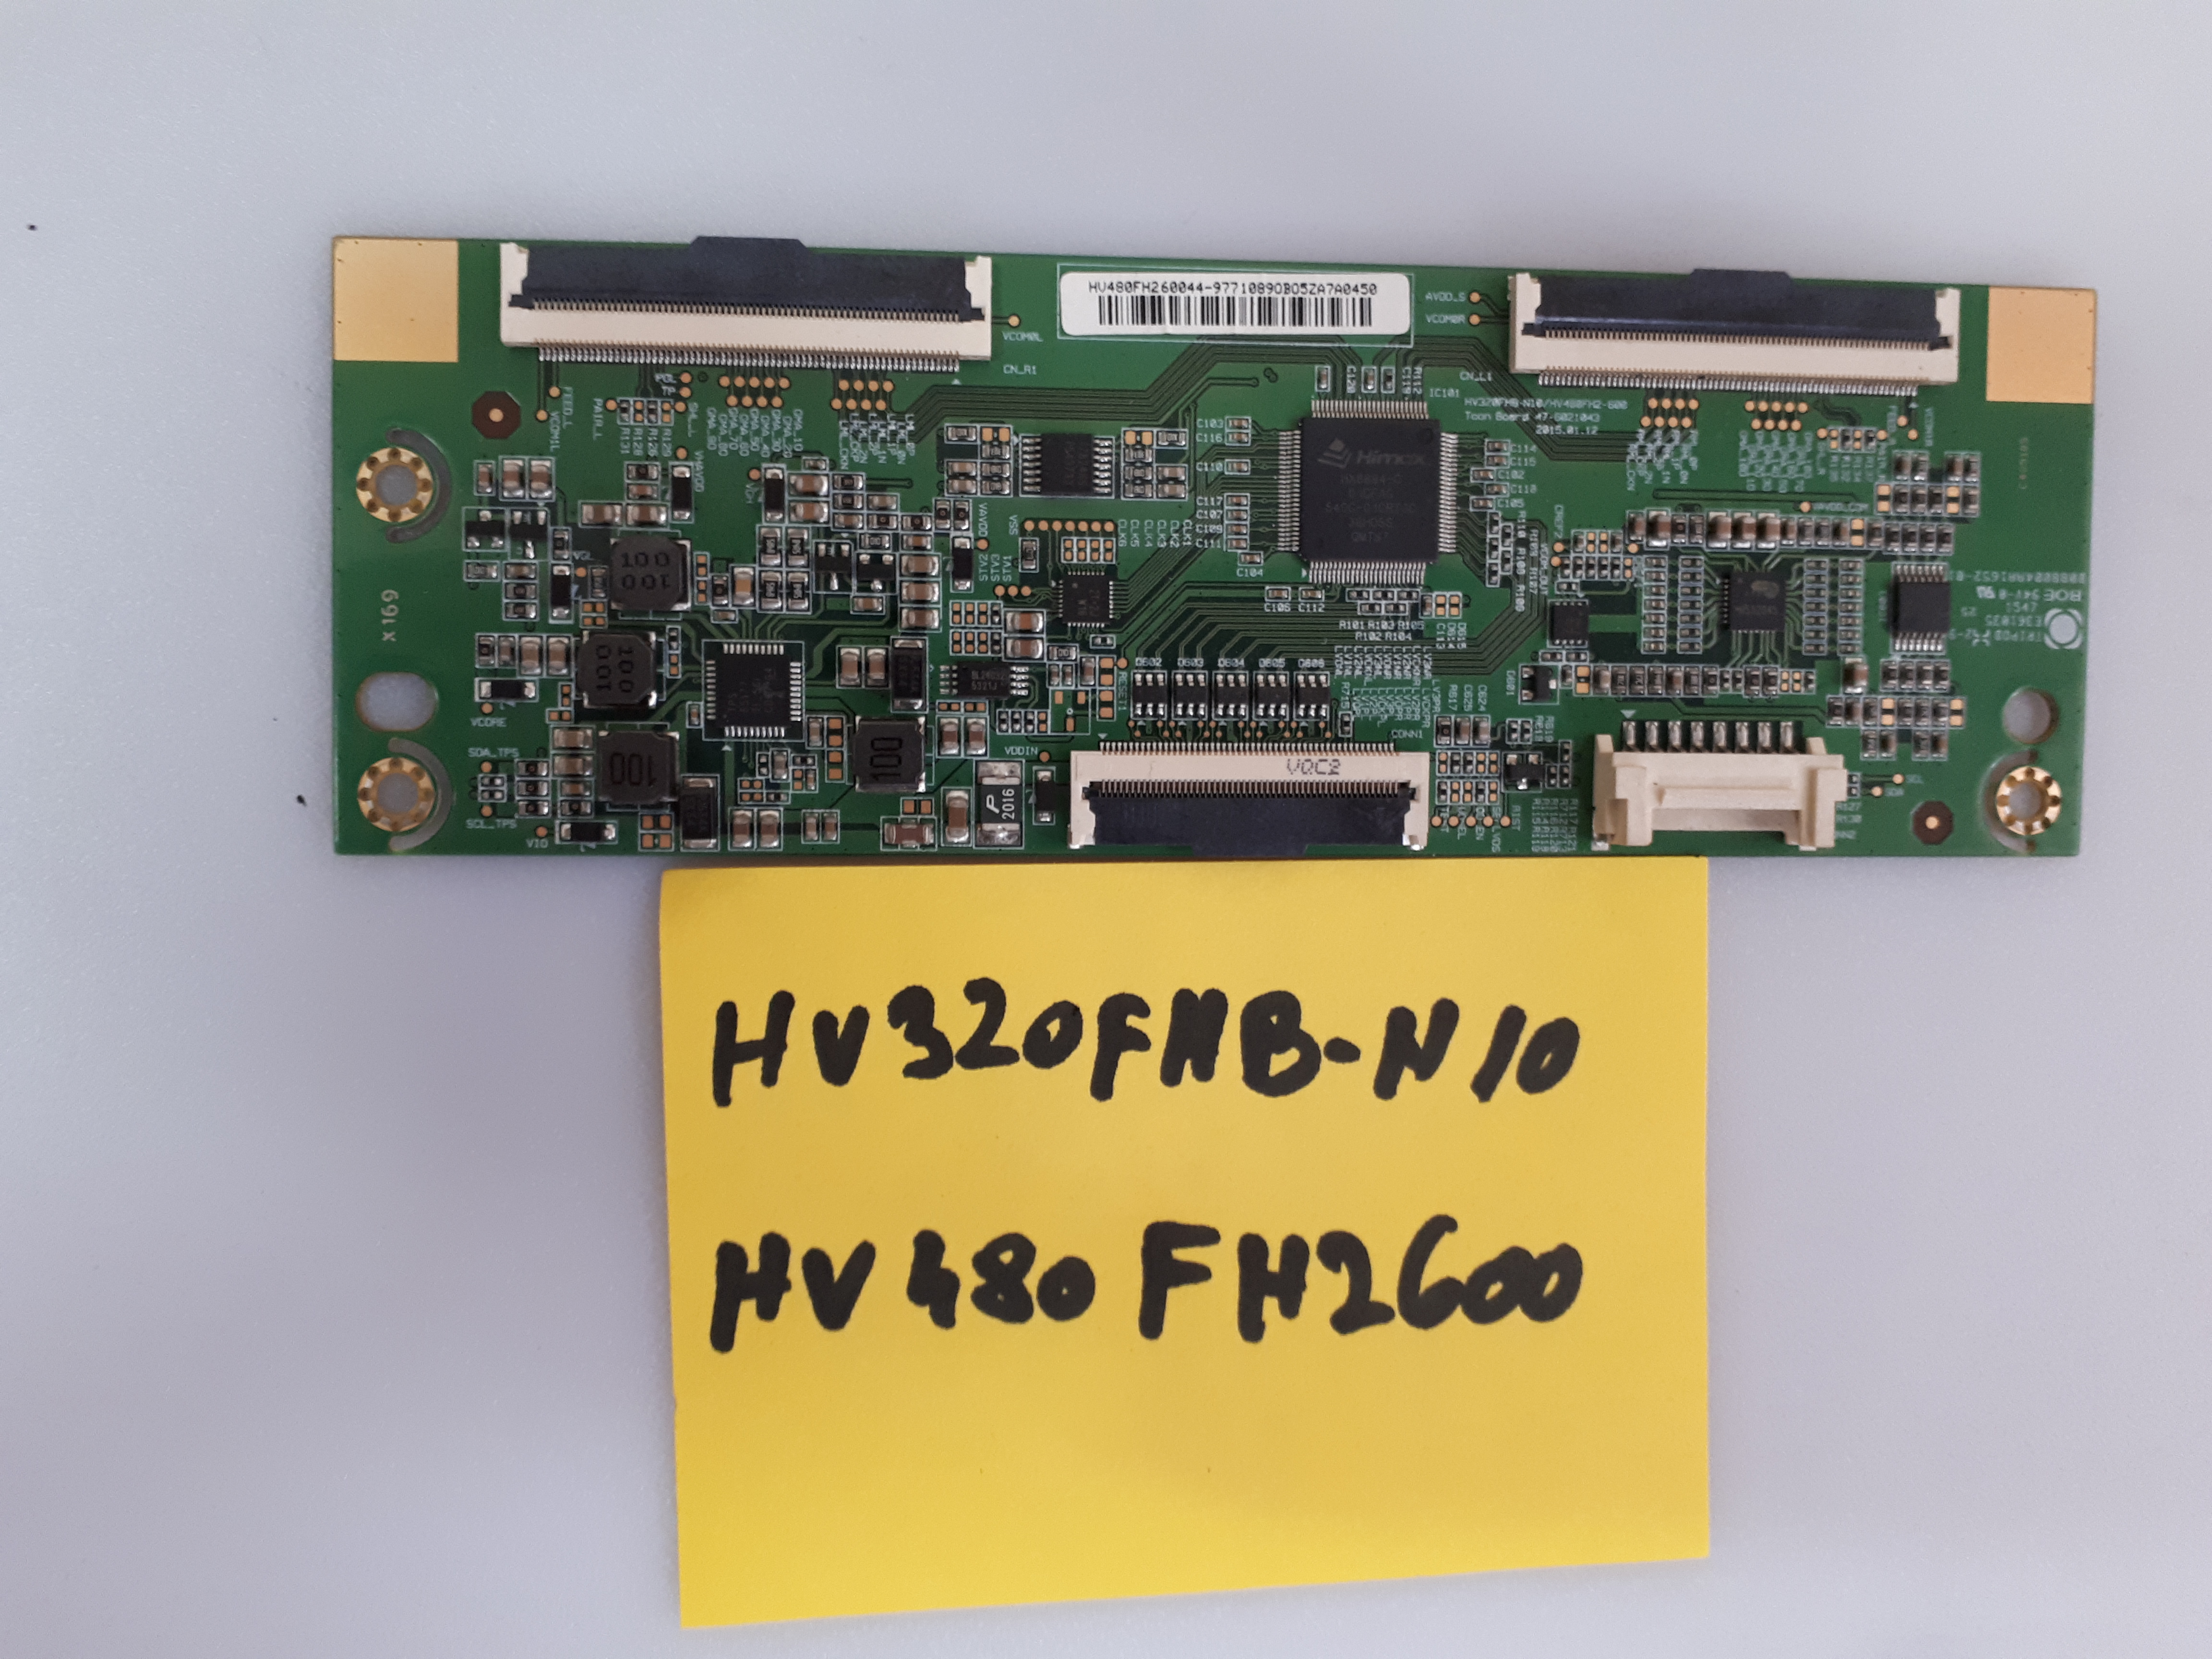 HV320FHB-N10  HV480FH-600